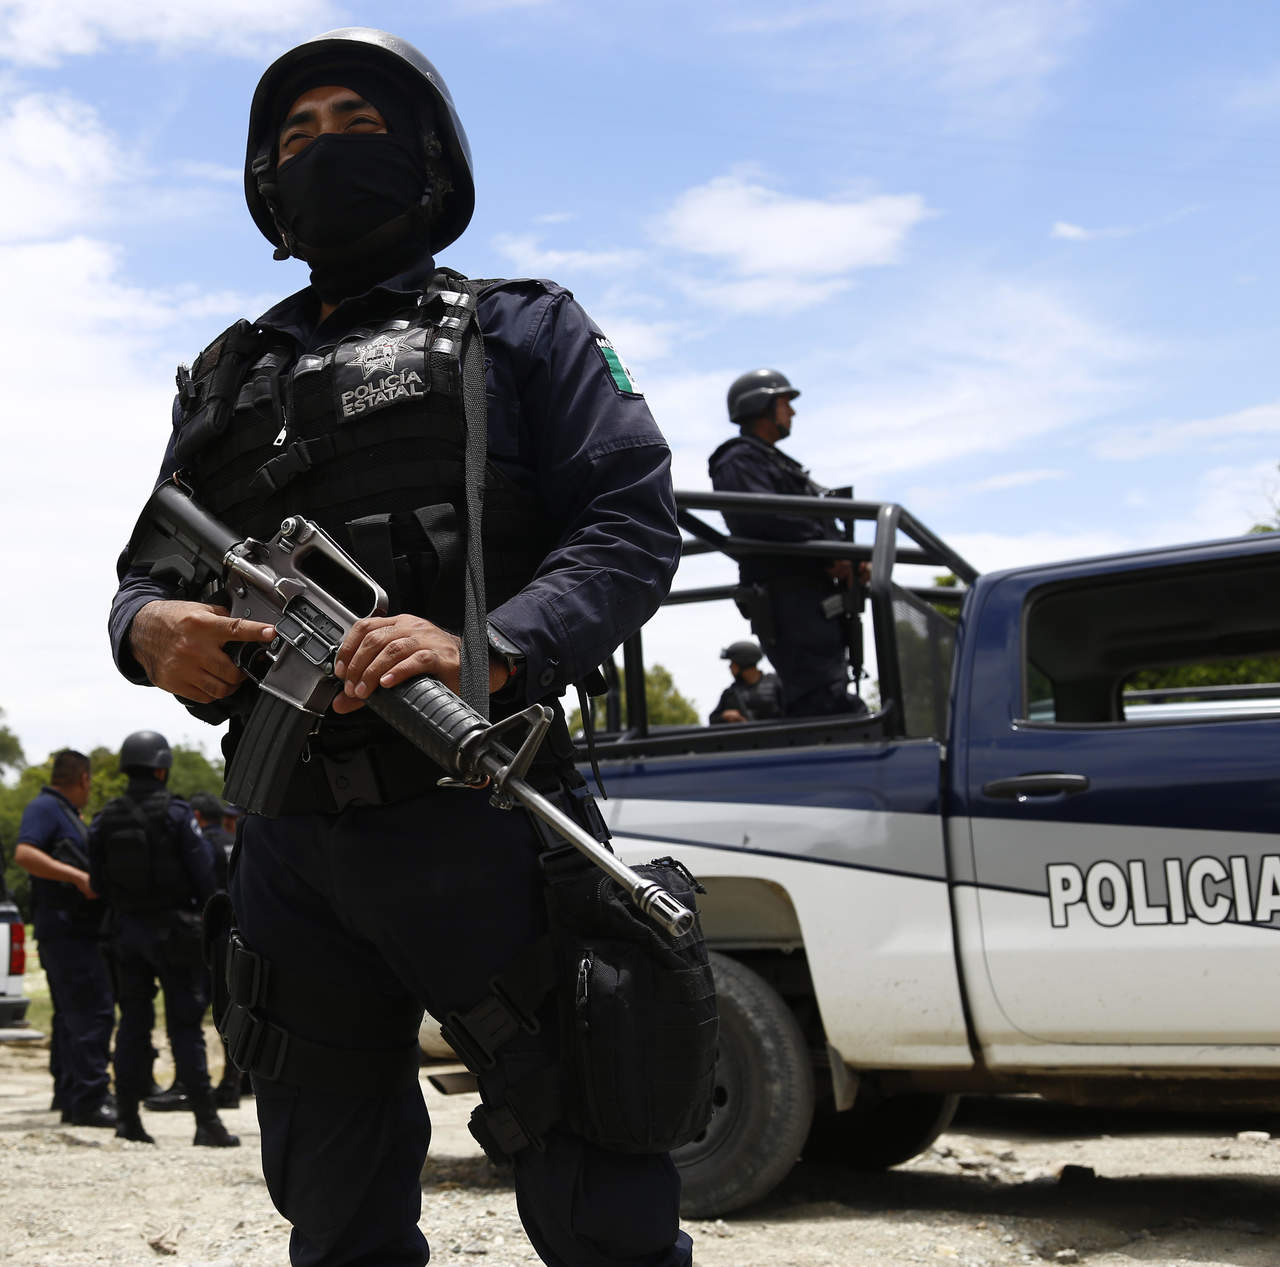 Elementos de la Agencia Estatal de Investigaciones (AEI), dependiente de la Fiscalía General del Estado de Oaxaca, fueron agredidos a balazos la tarde de ayer jueves en la región sierra sur del estado, hechos en que uno de sus integrantes resultó lesionado. (ARCHIVO)